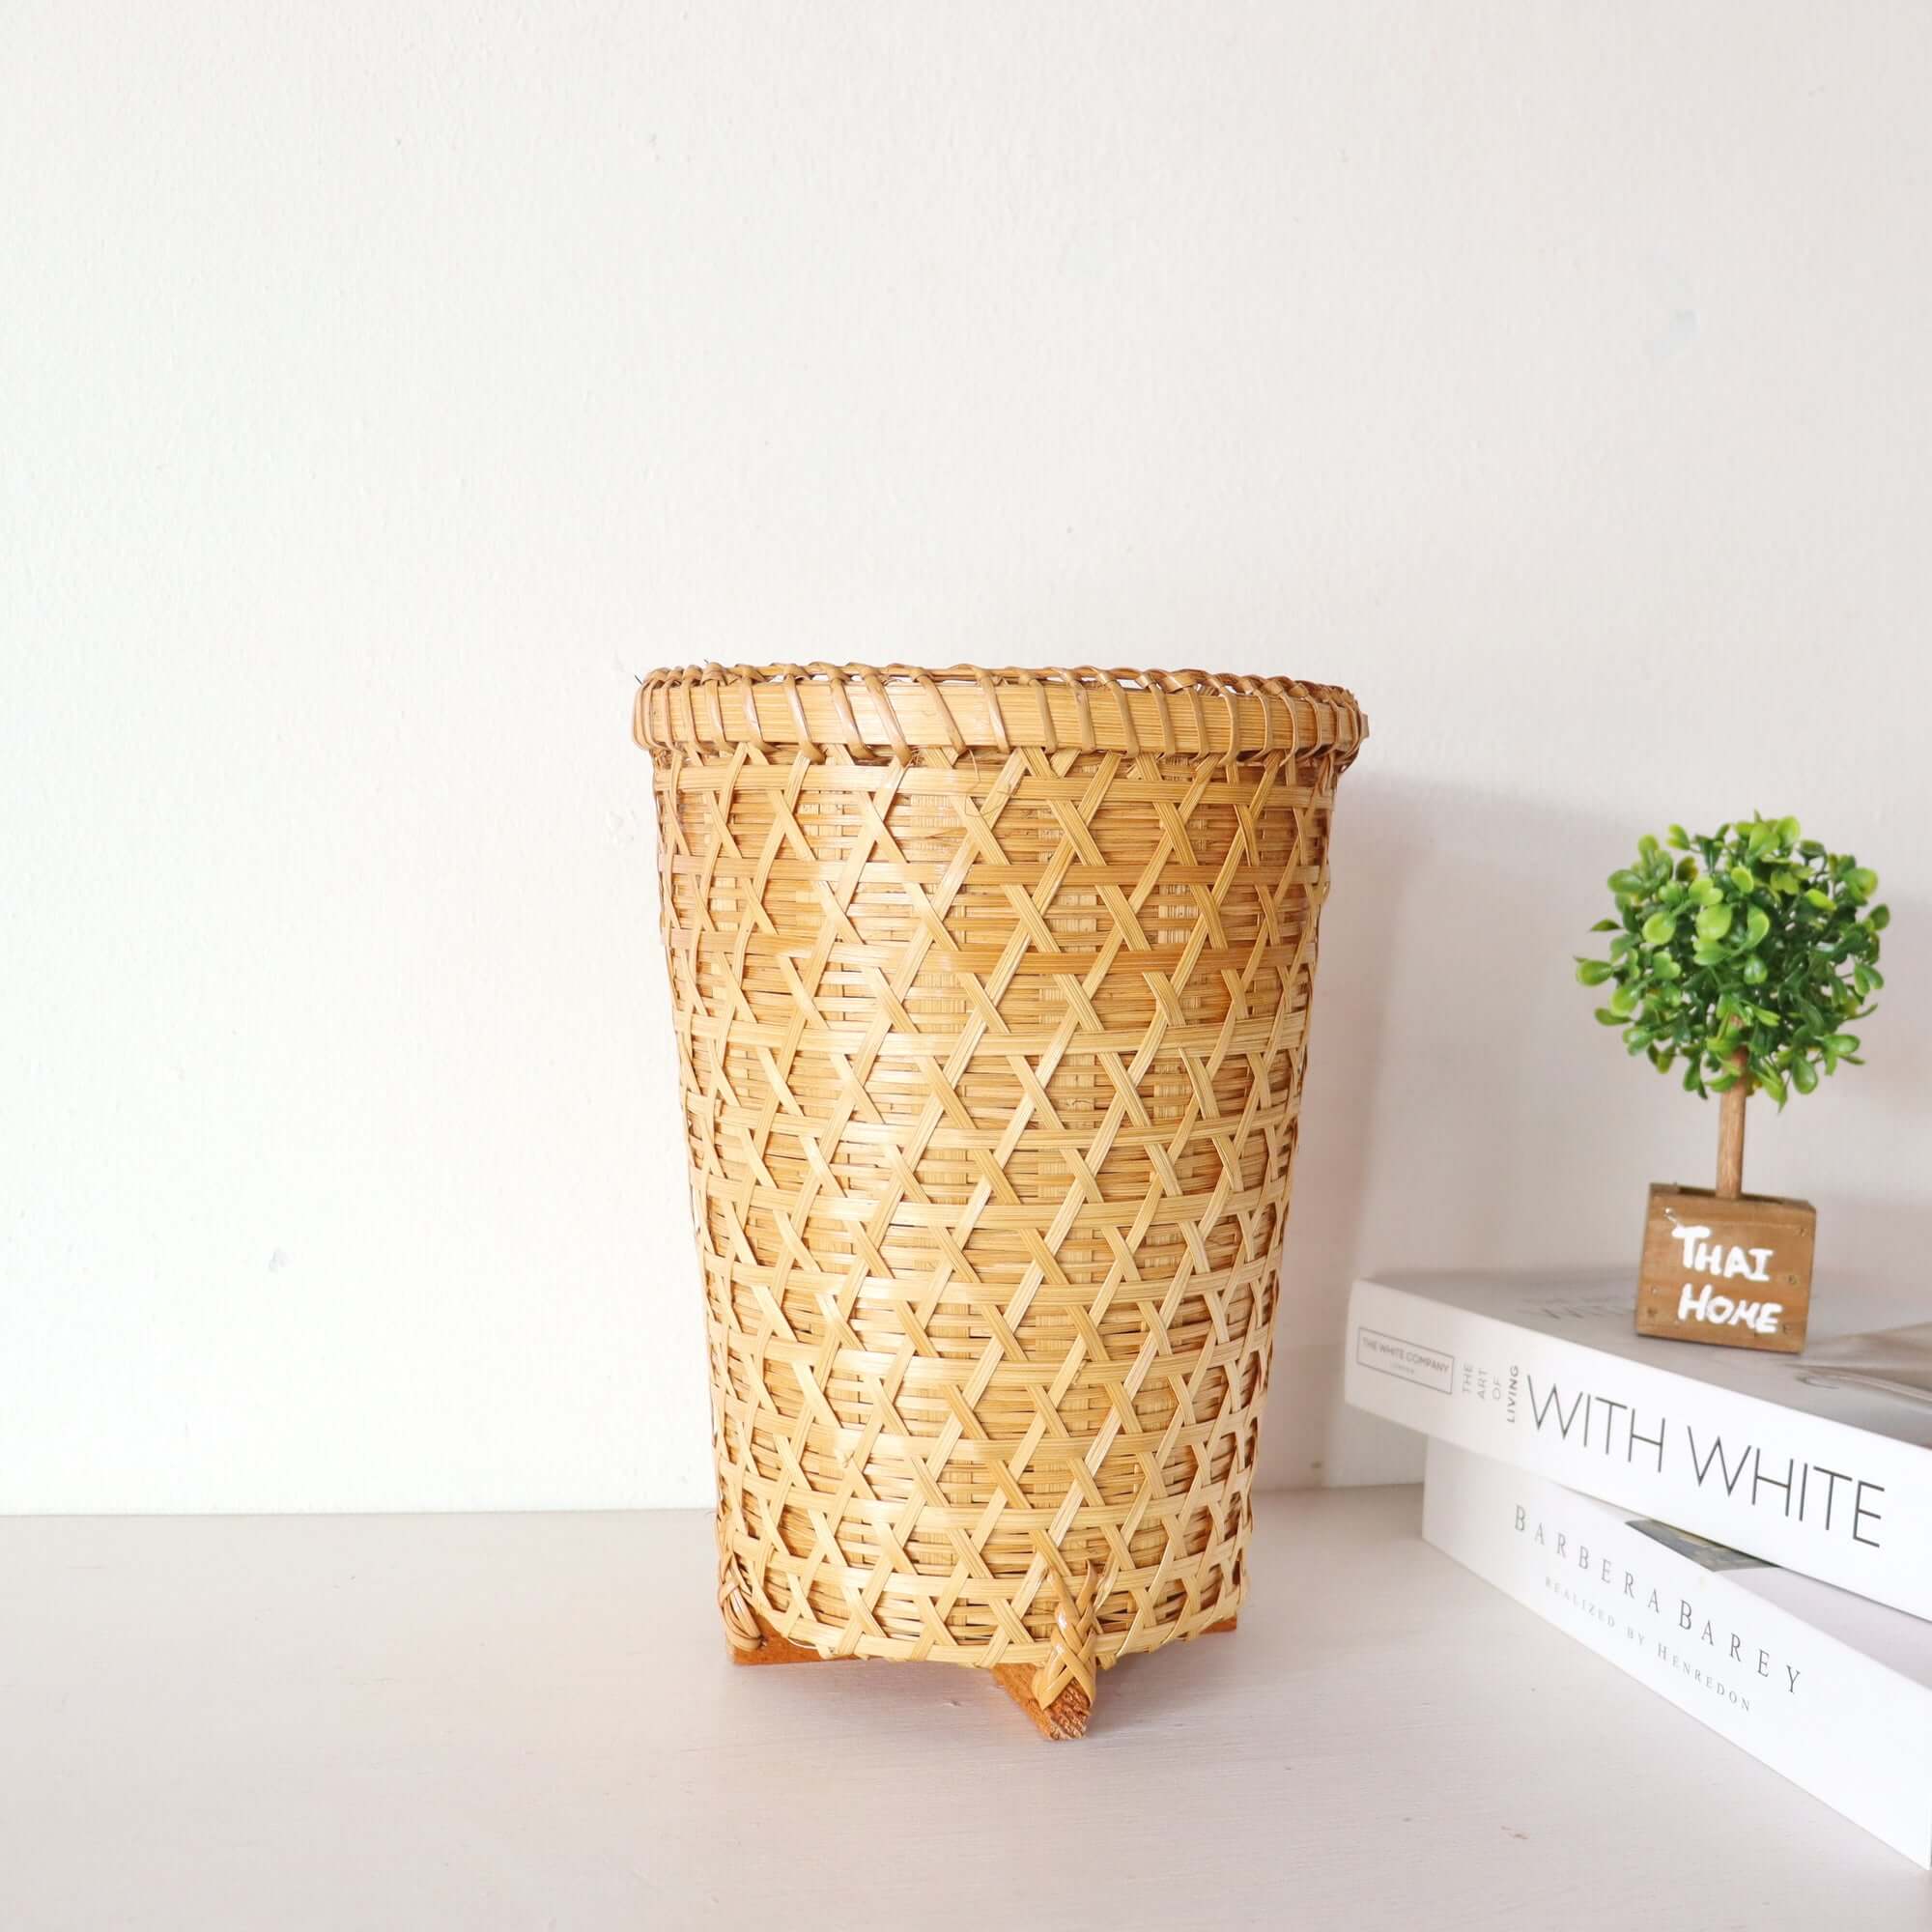 CHAT SU DA - Bamboo Basket